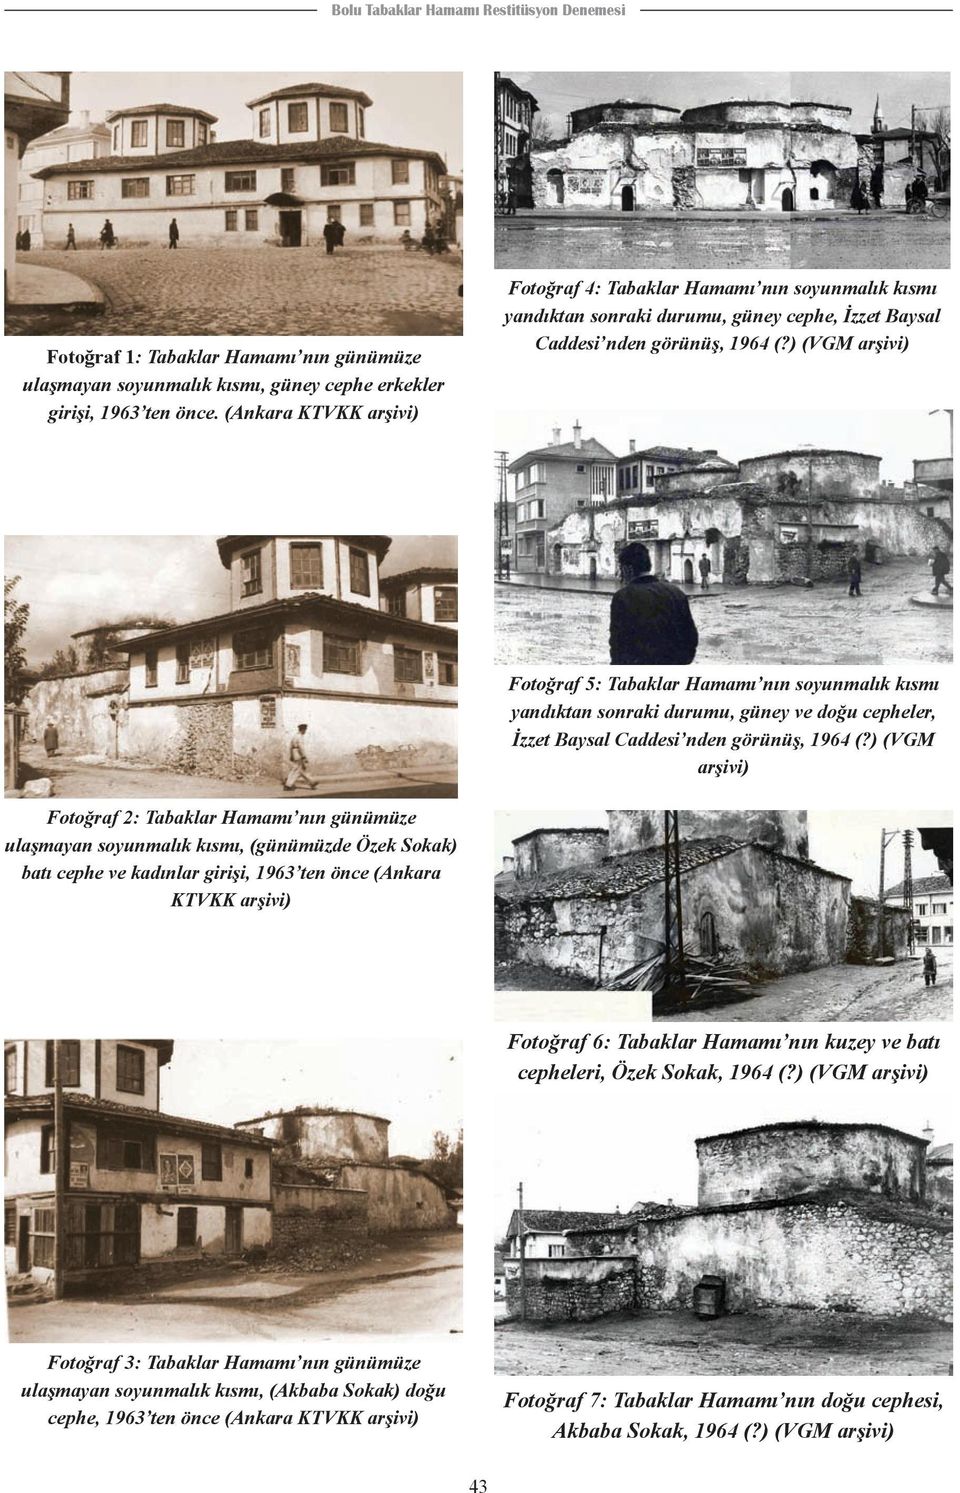 ) (VGM arşivi) Fotoğraf 5: Tabaklar Hamamı nın soyunmalık kısmı yandıktan sonraki durumu, güney ve doğu cepheler, İzzet Baysal Caddesi nden görünüş, 1964 (?